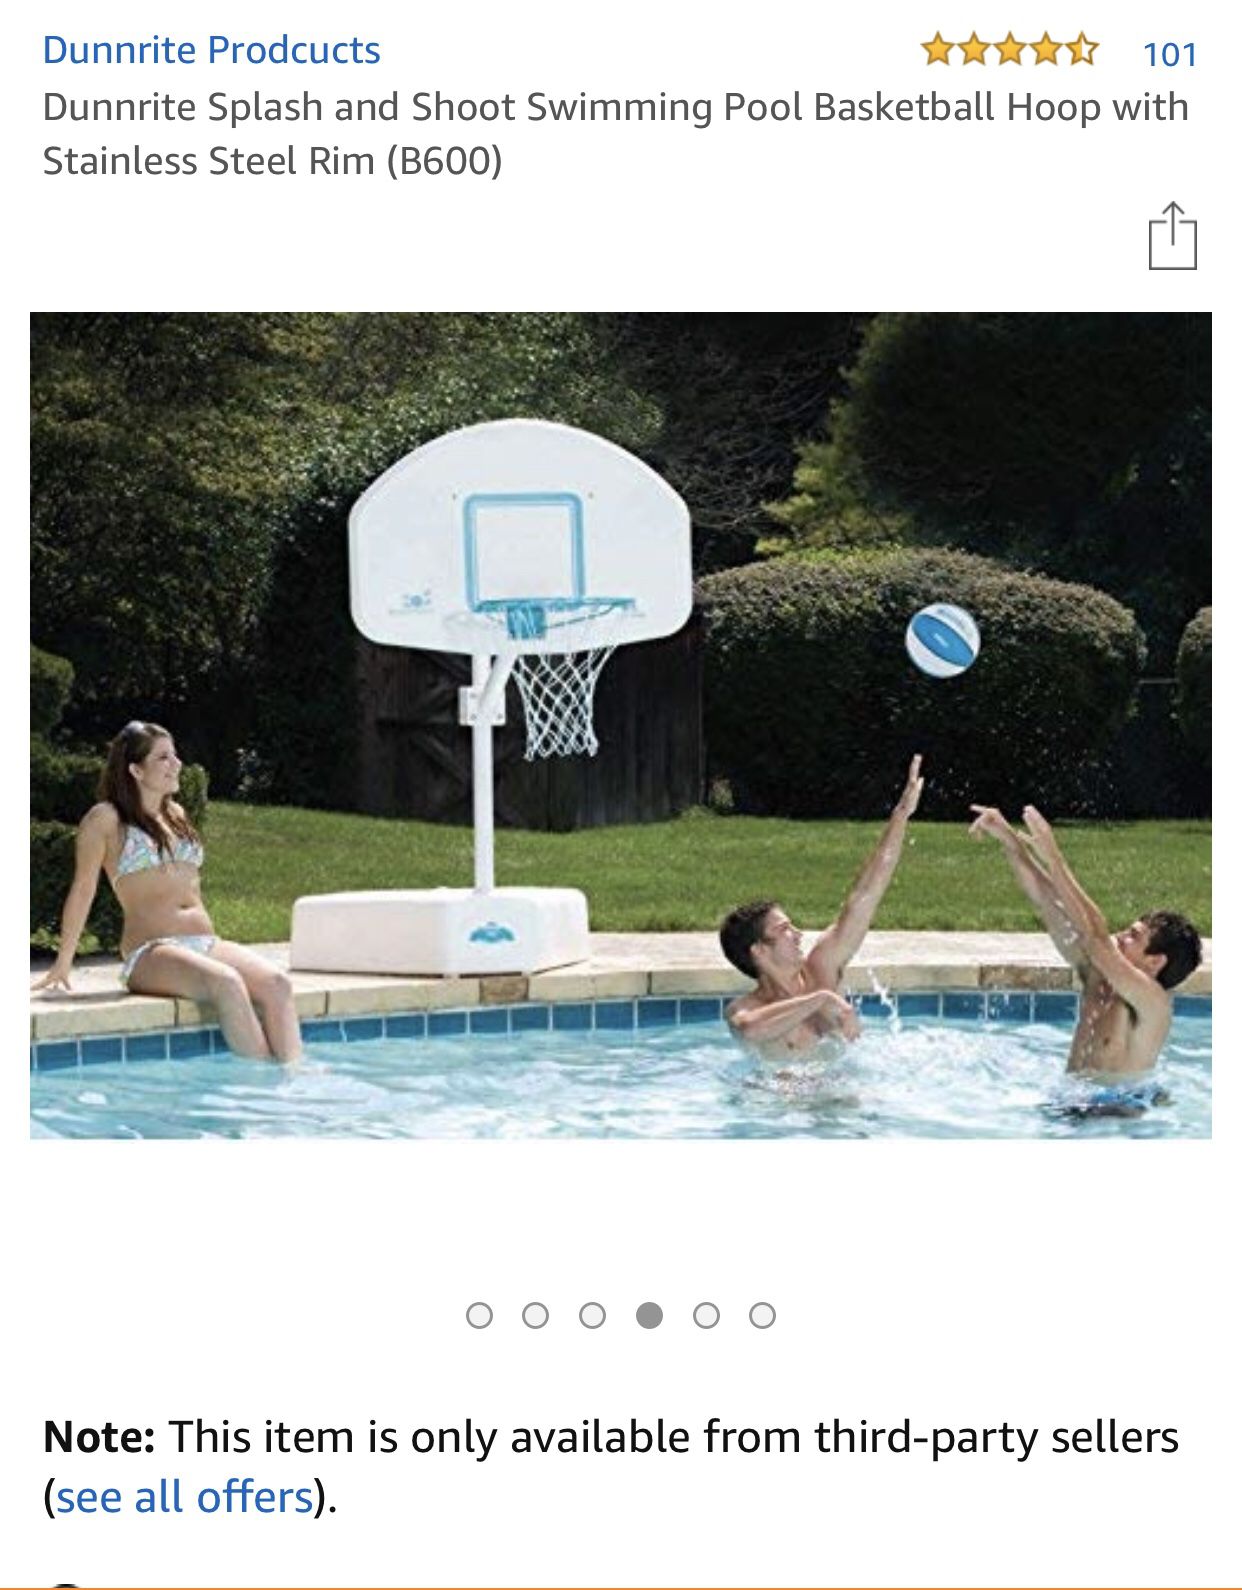 Pool side basketball hoop